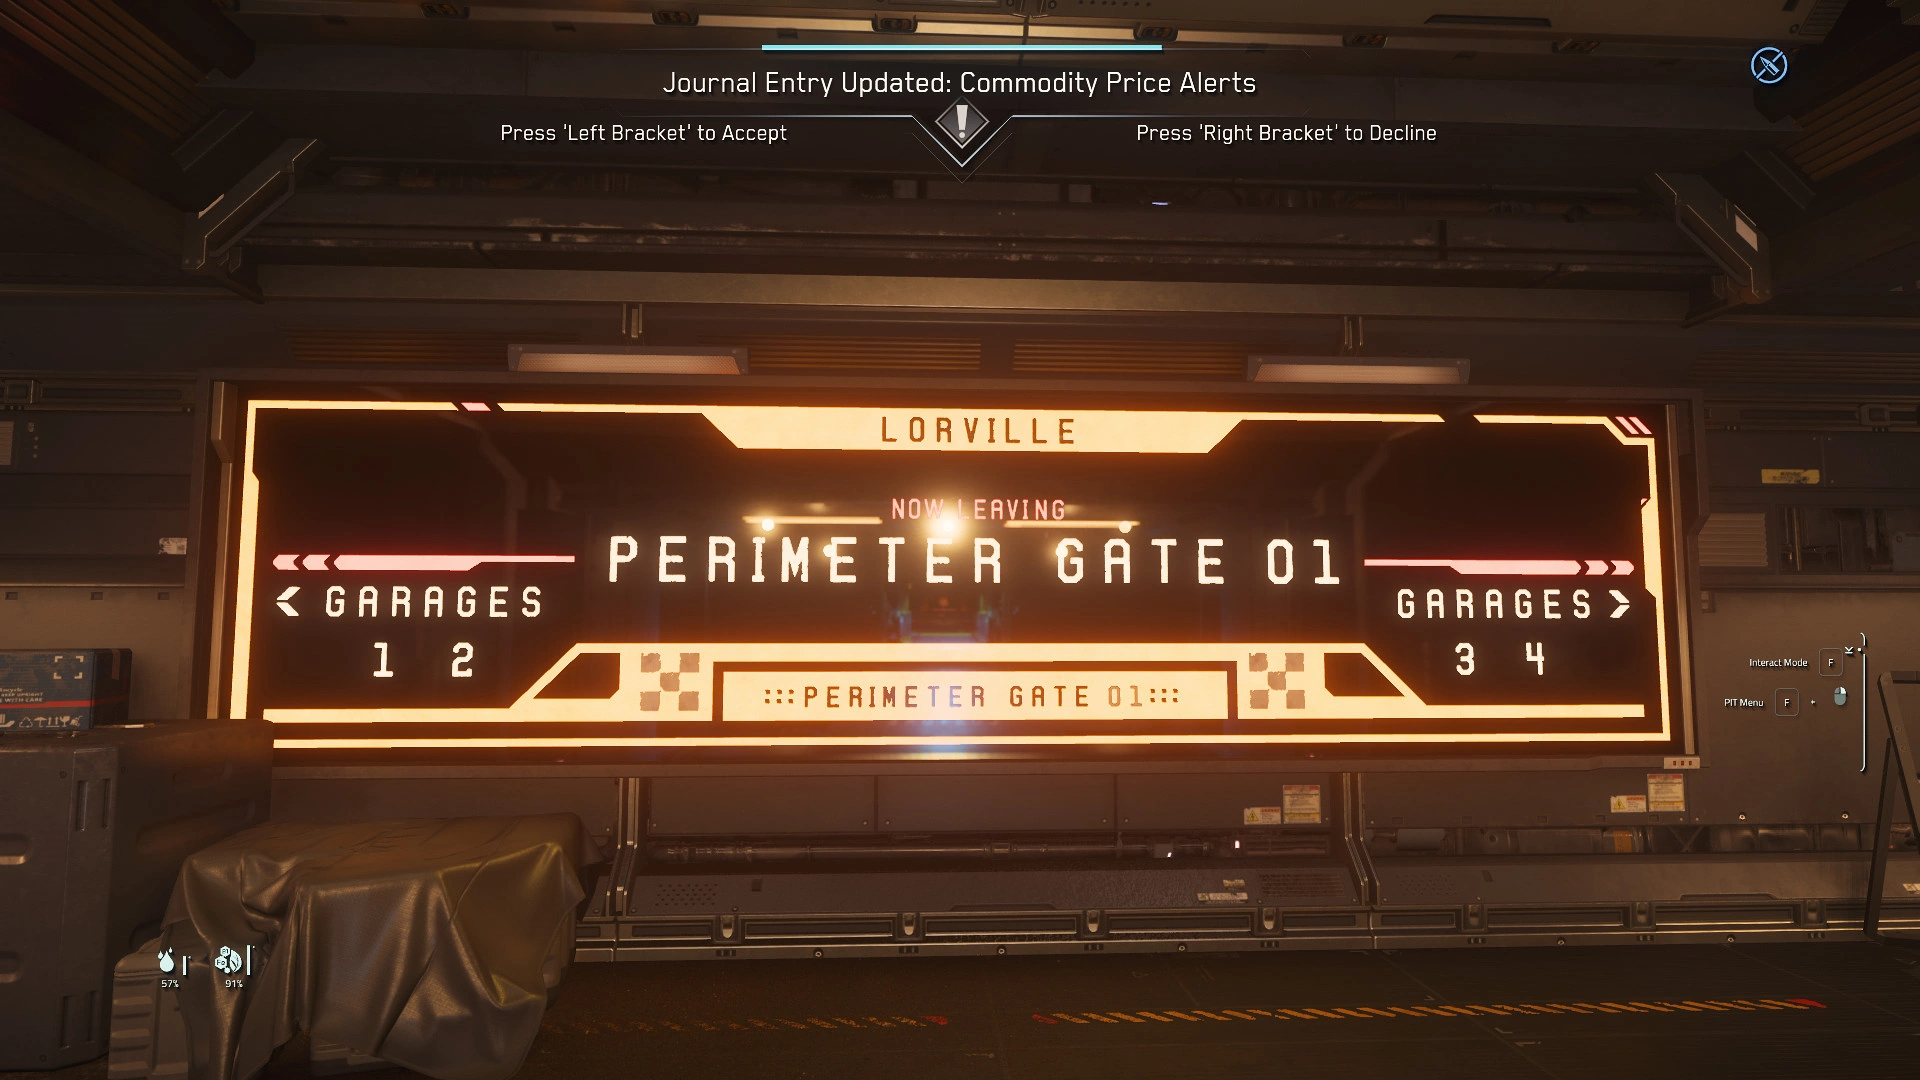 Perimeter Gate 01- Garages